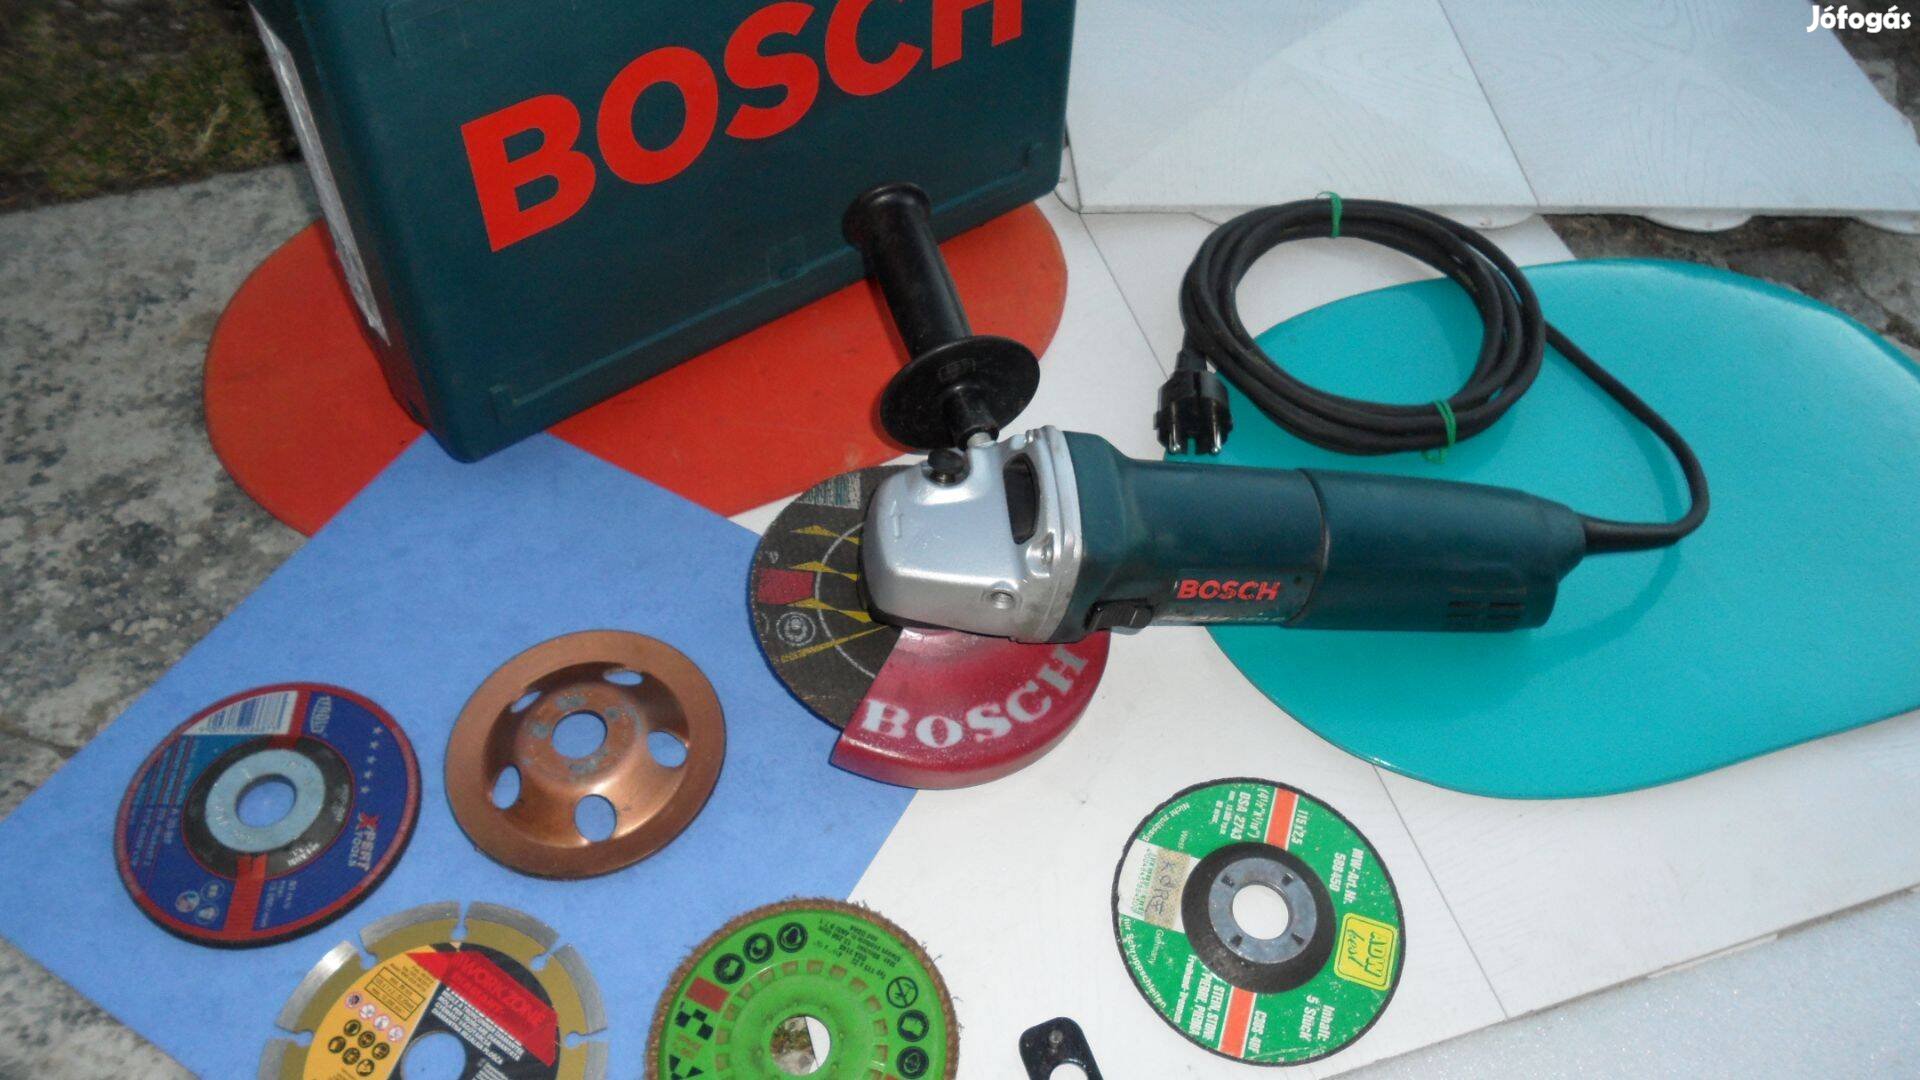 Bosch sarokcsiszoló Flex köszörű 1020/1400 W 150 mm Makita Elu tárcsa